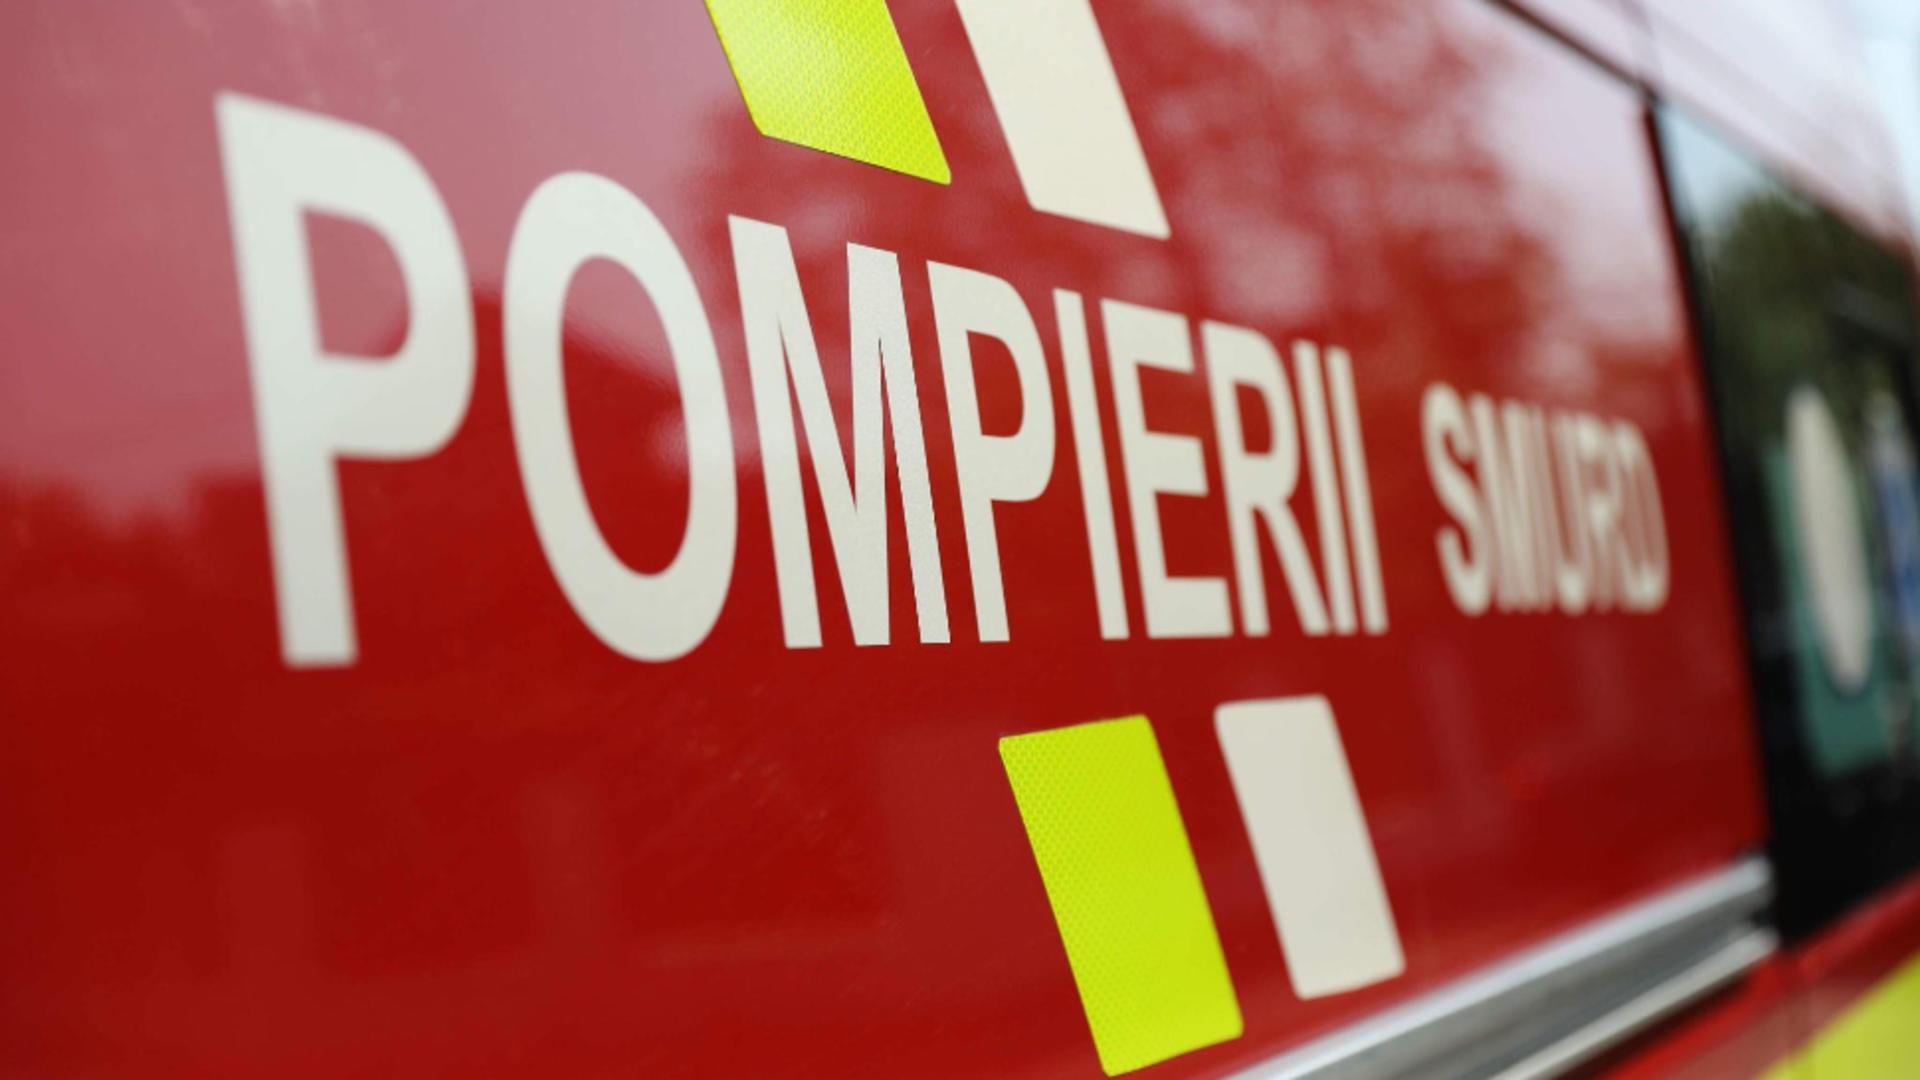 Explozie puternică a unei butelii în Constanța: O femeie și un copil de 4 ani, duși la spital cu arsuri grave - Intervenția pompierilor